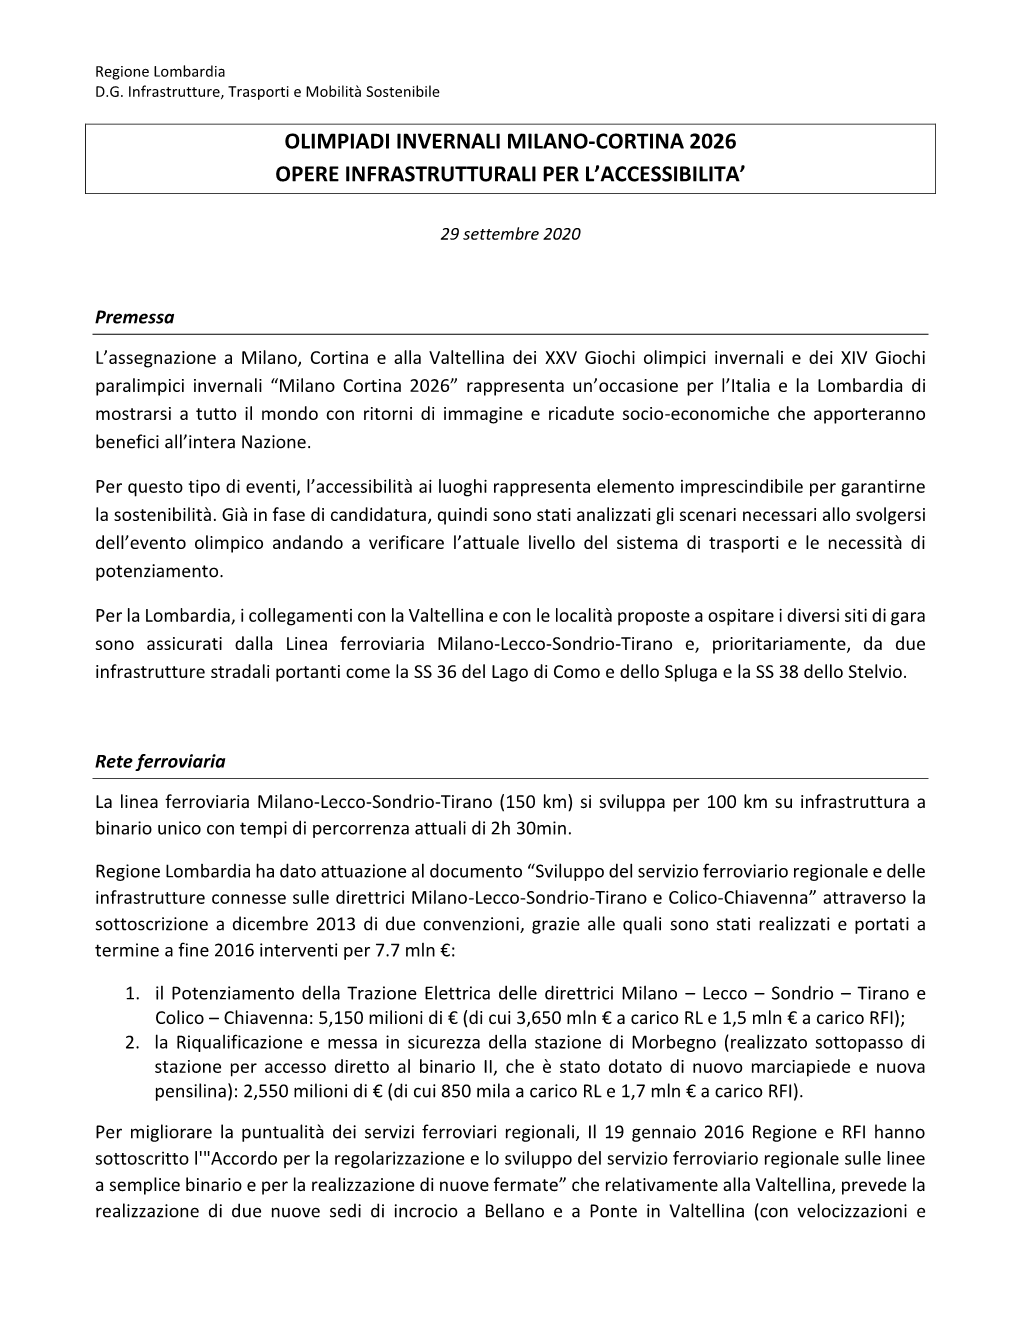 Olimpiadi Invernali Milano-Cortina 2026 Opere Infrastrutturali Per L’Accessibilita’